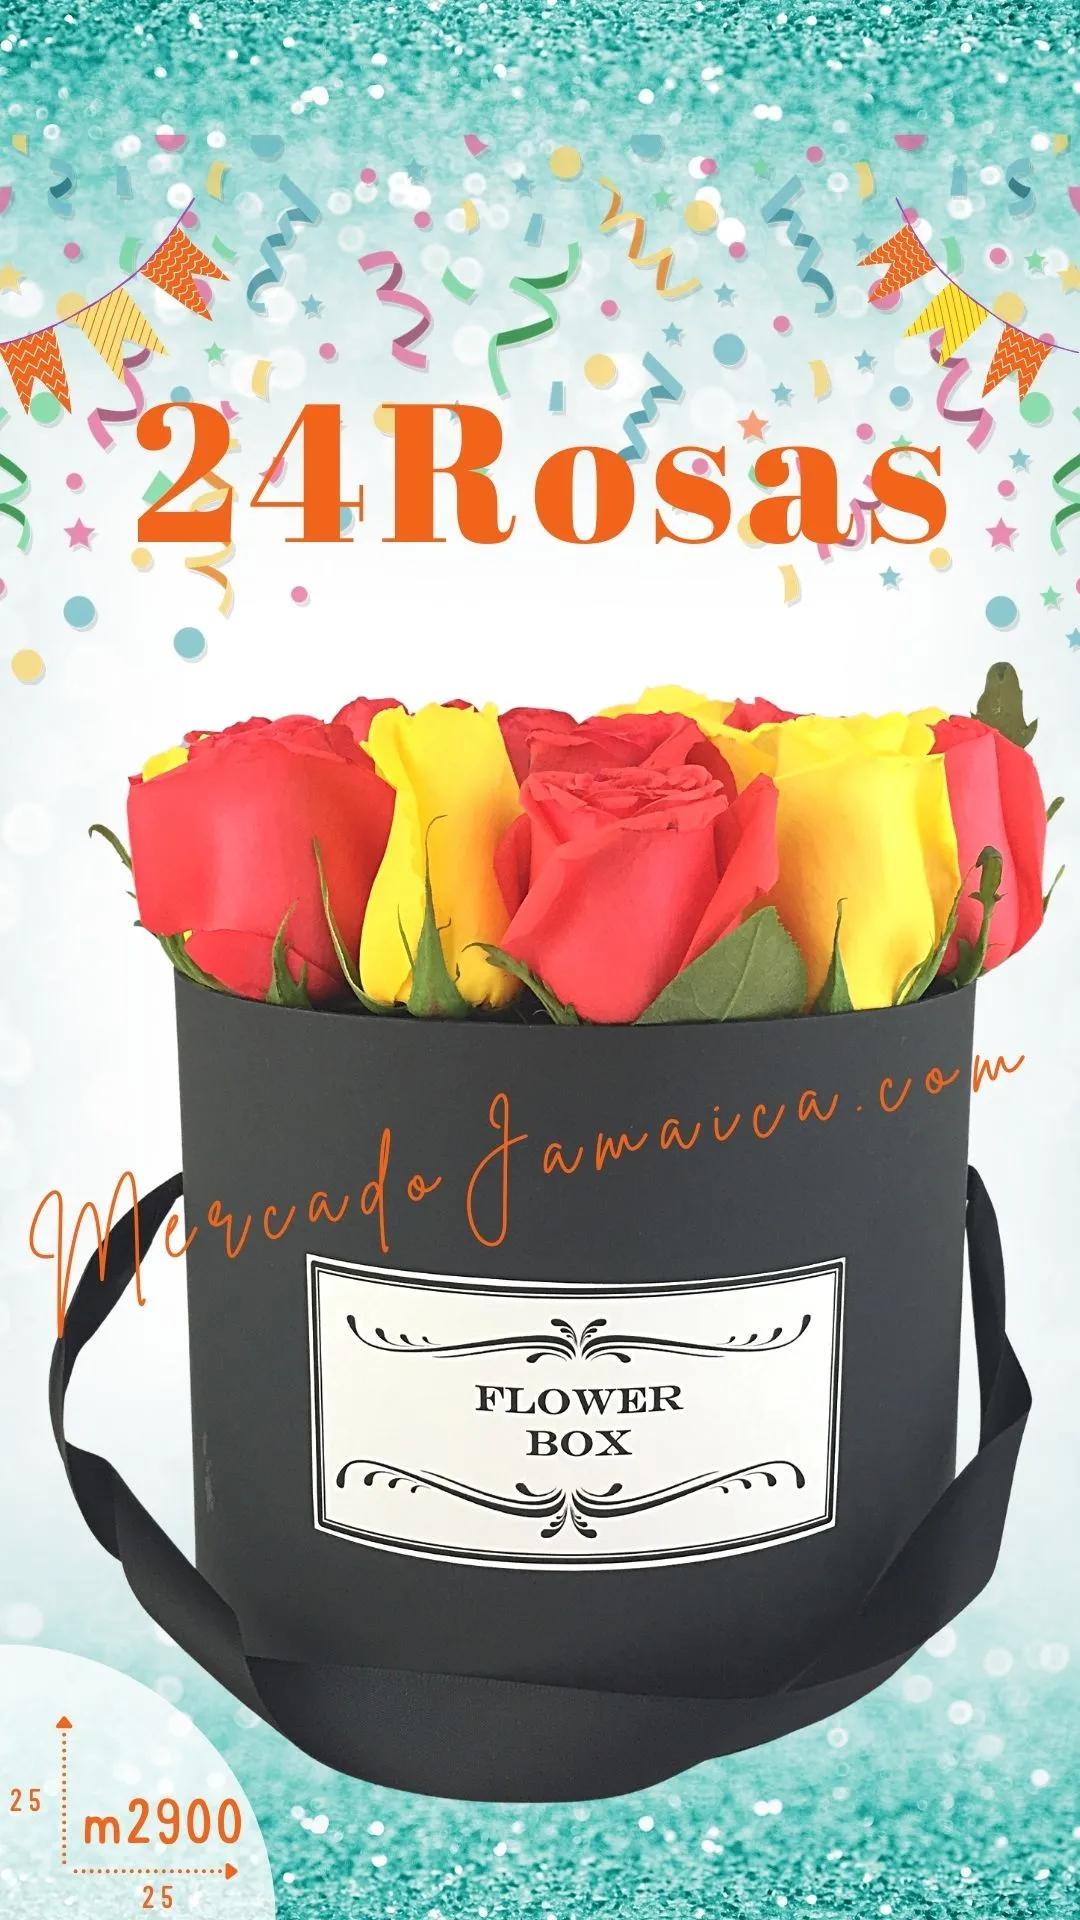 Caja con 24 Rosas Sunny